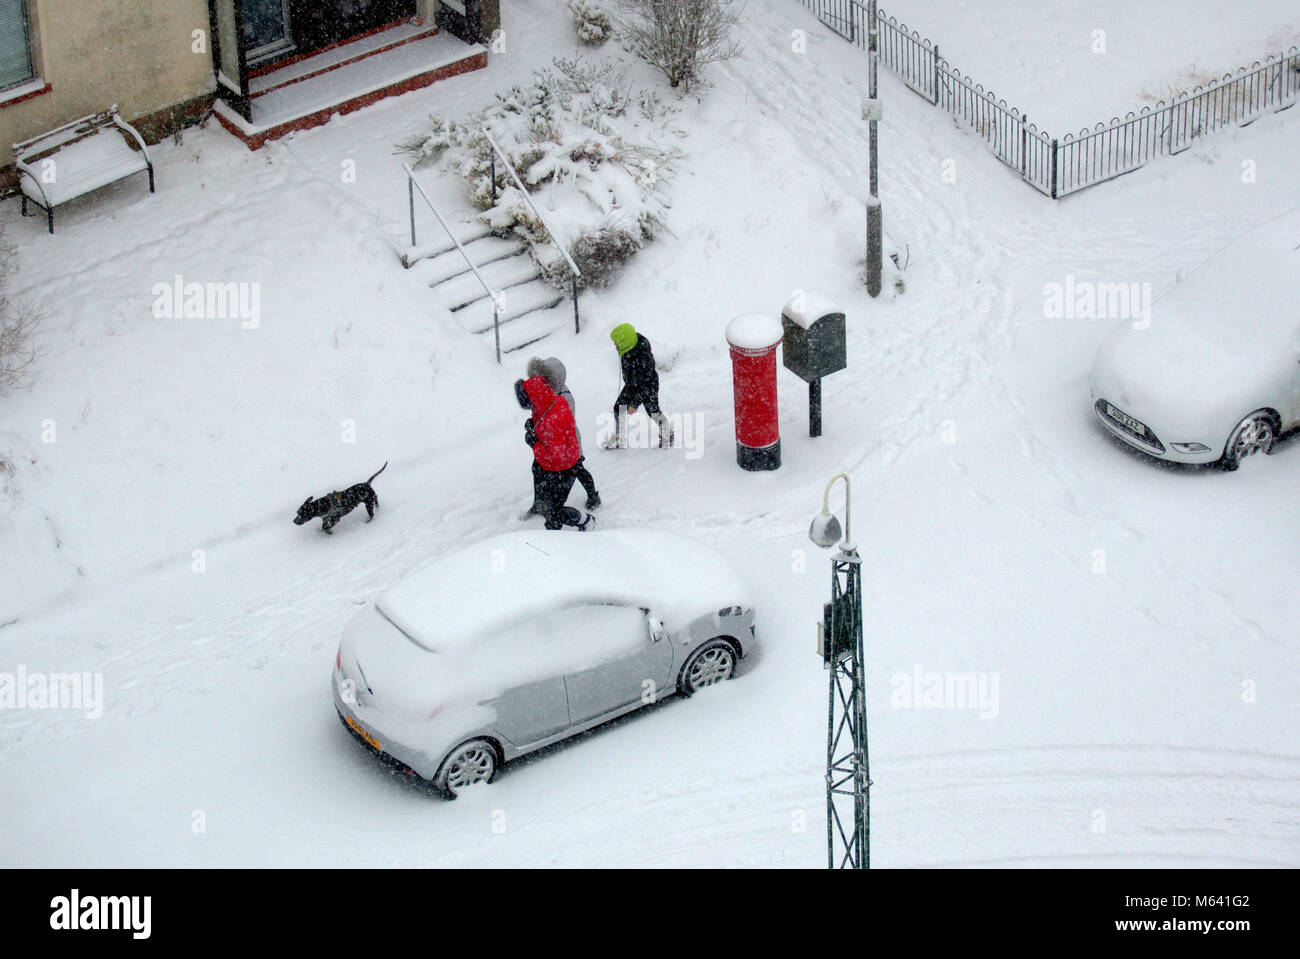 Glasgow, Scozia. 28 feb 2018.UK Meteo: dog walkers lottando nella neve La bestia da est meteo copre la città come la blizzard la neve copre tutti e un flash whiteout saluta le persone sul loro modo, visibilità. Credito: gerard ferry/Alamy Live News Foto Stock